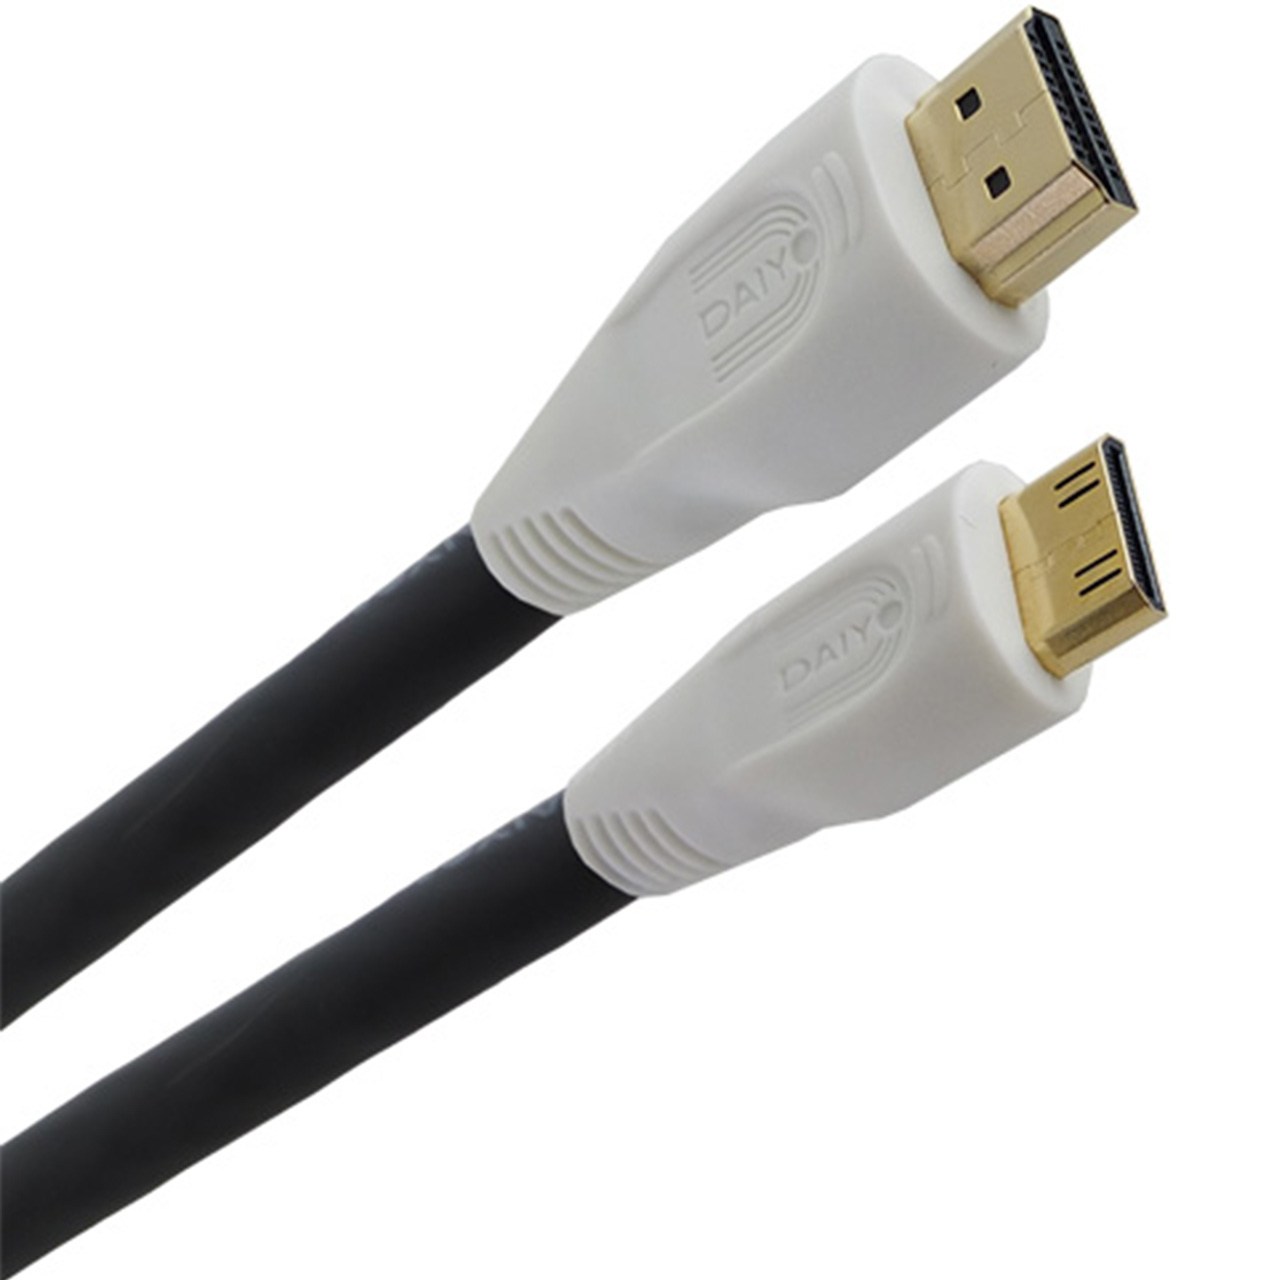 کابل تبدیل Mini HDMI به HDMI دایو مدل TA5665 به طول 1.5 متر